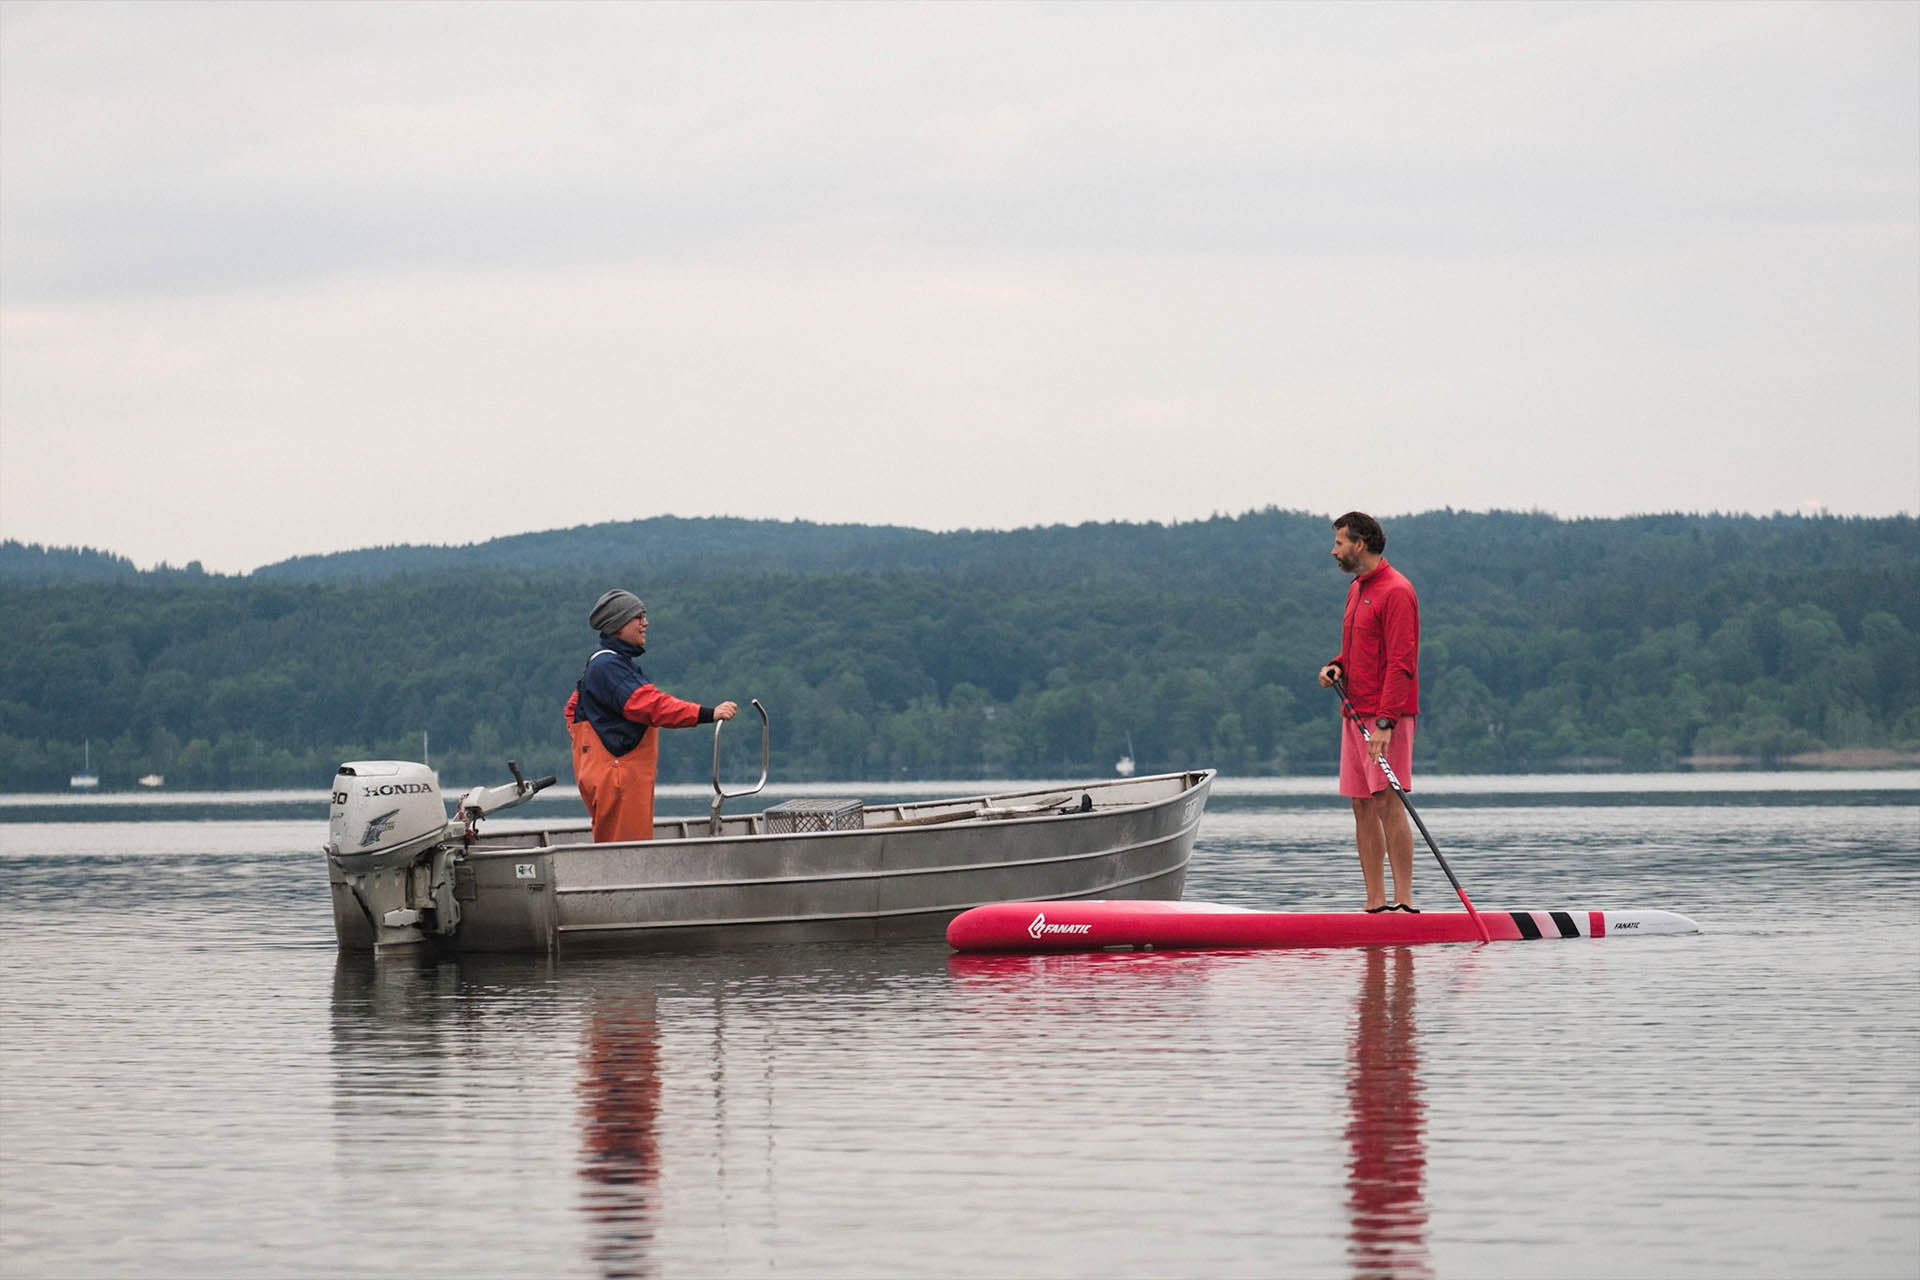 Blick auf den Starnberger See. Auf dem See treffen sich eine Fischerin und ein Stand-up-Paddler. Beide begrüßen sich freundlich.